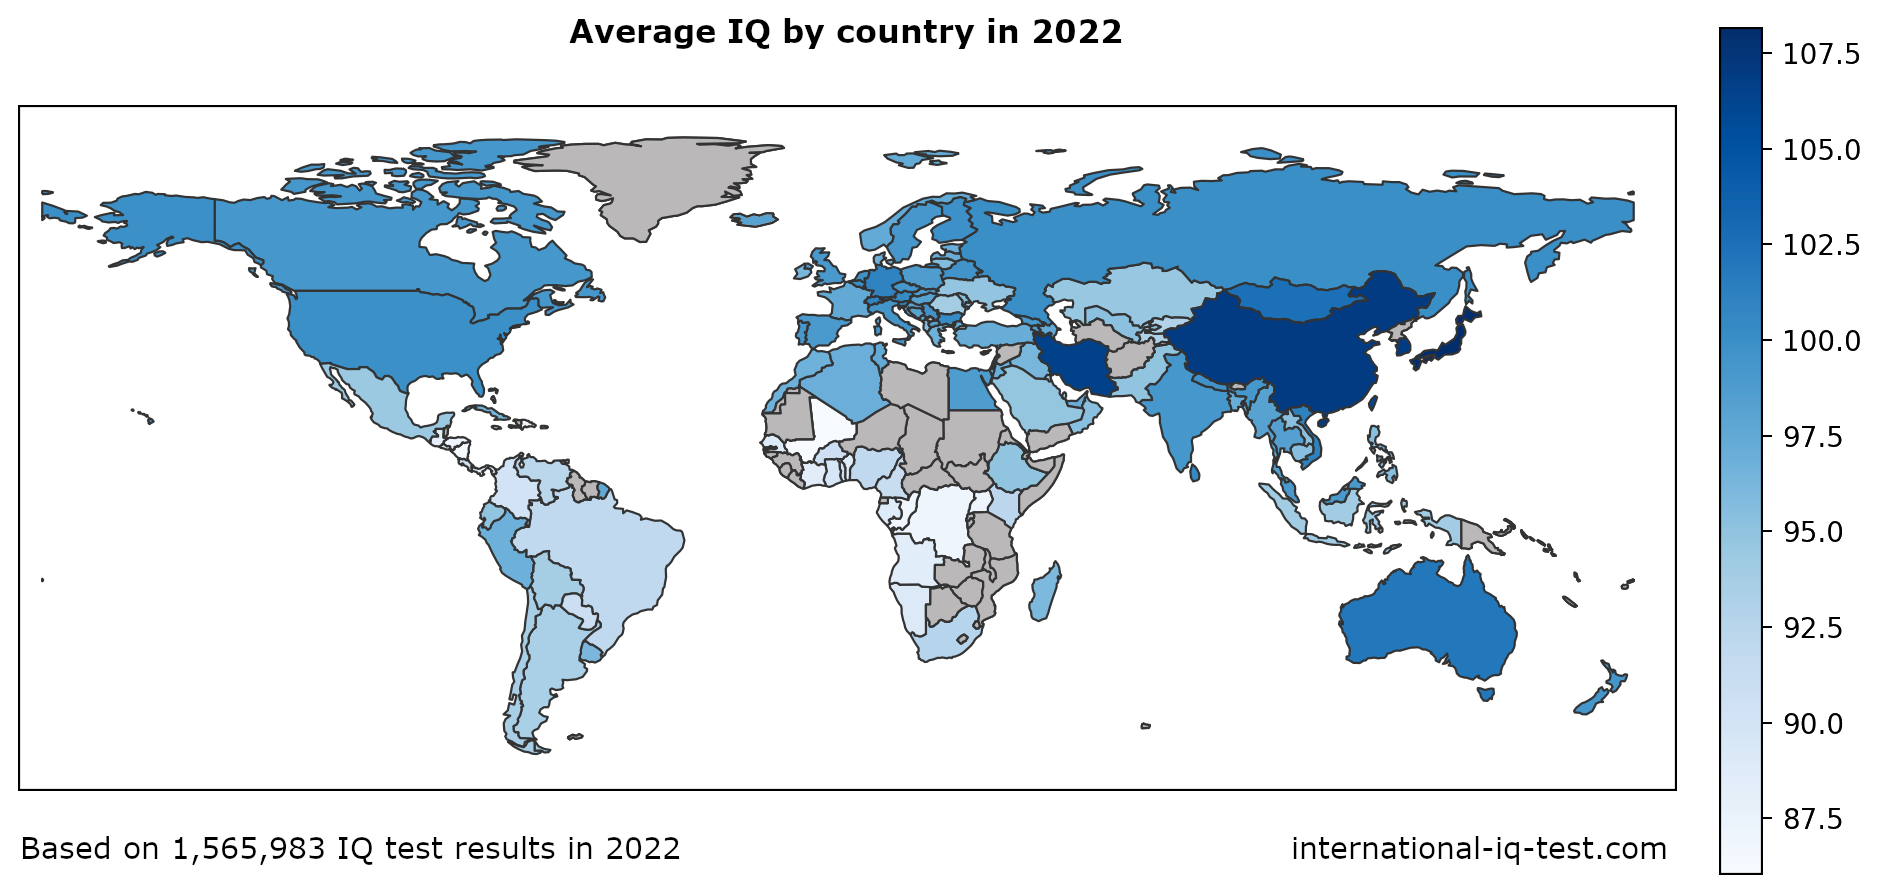 Weltkarte mit dem durchschnittlichen IQ pro Land im Jahr 2022 in Blautönen vom hellsten zum dunkelsten